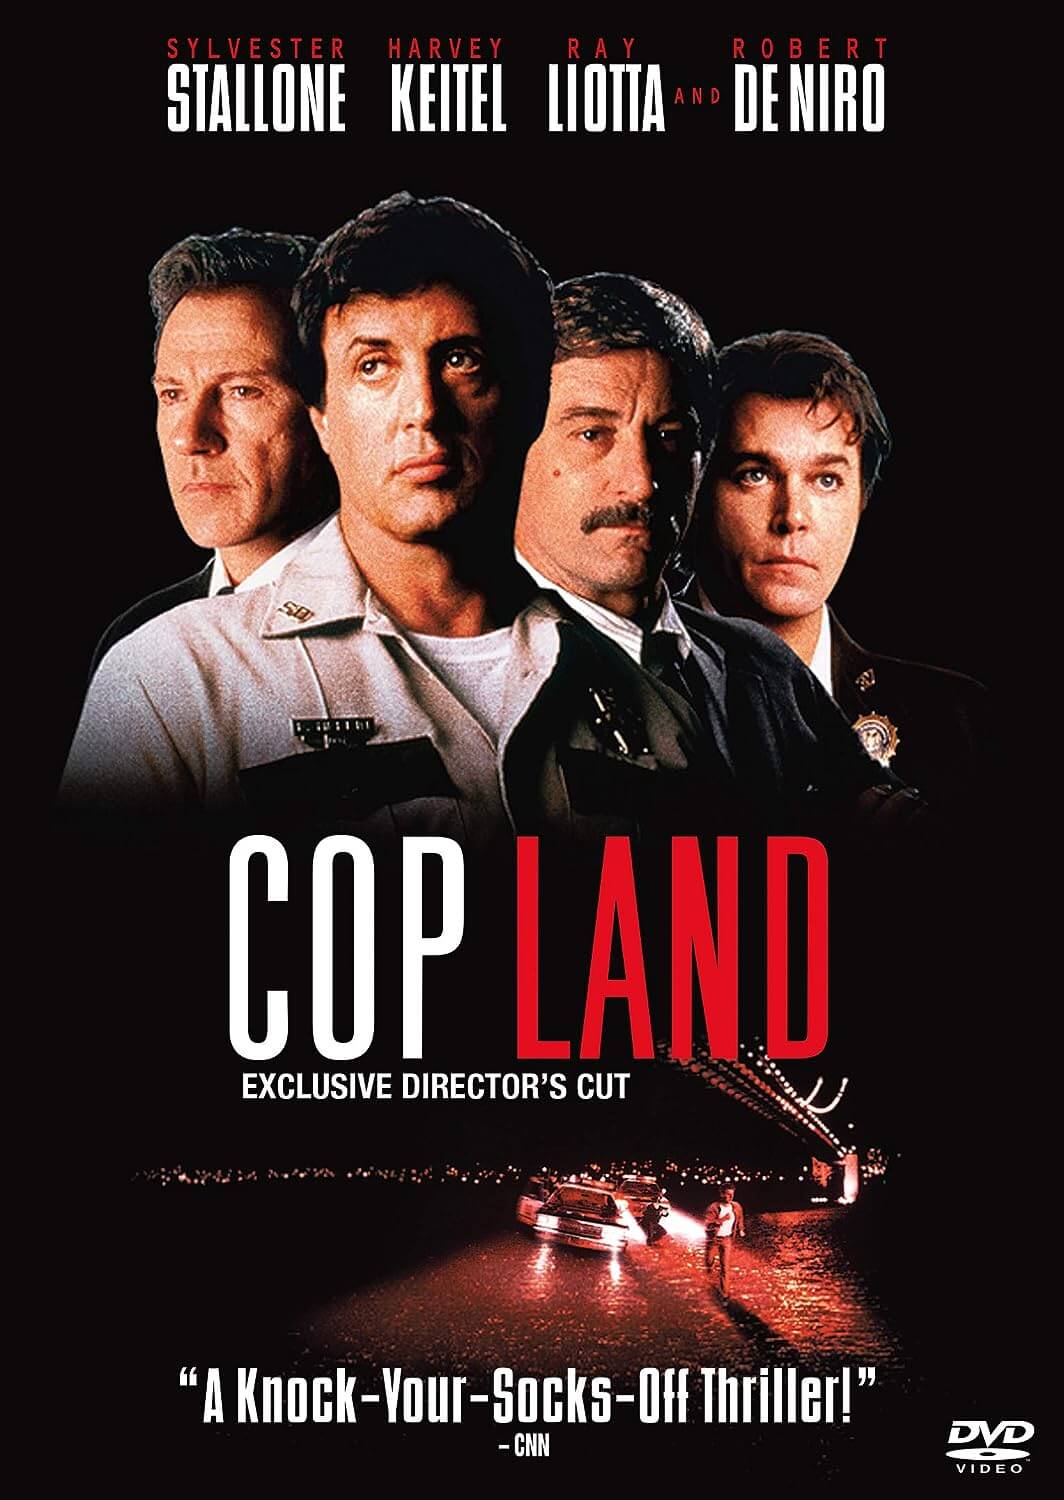 “Cop Land” (1997)